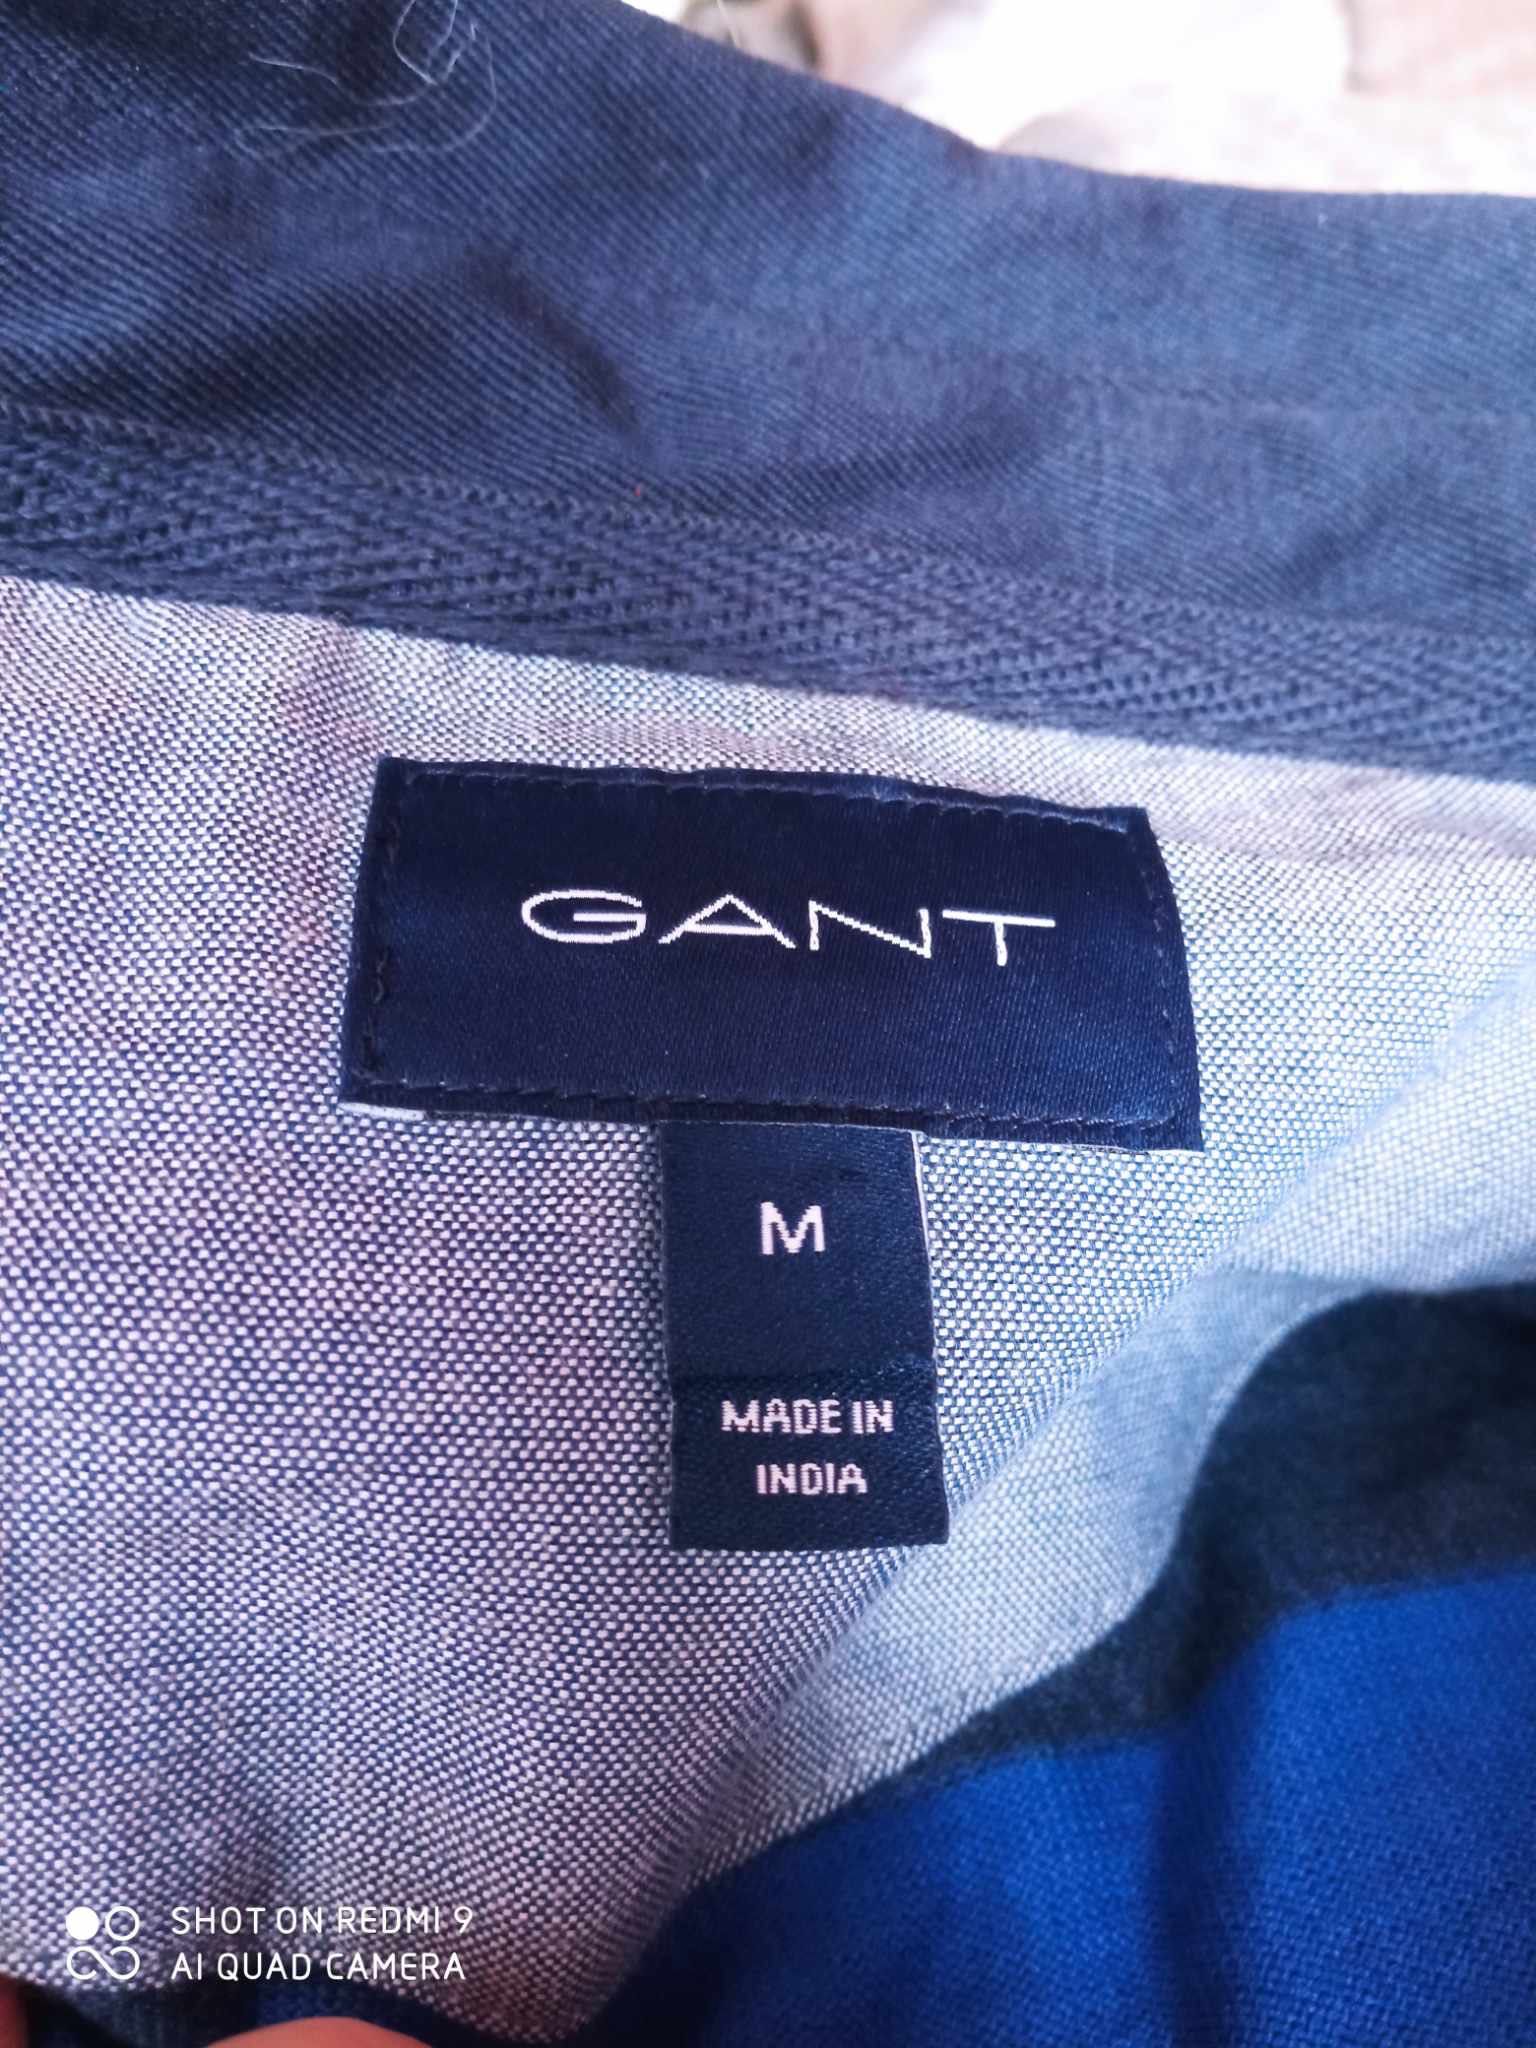 Bluzka męska Gant M oryginalna nie chodzona